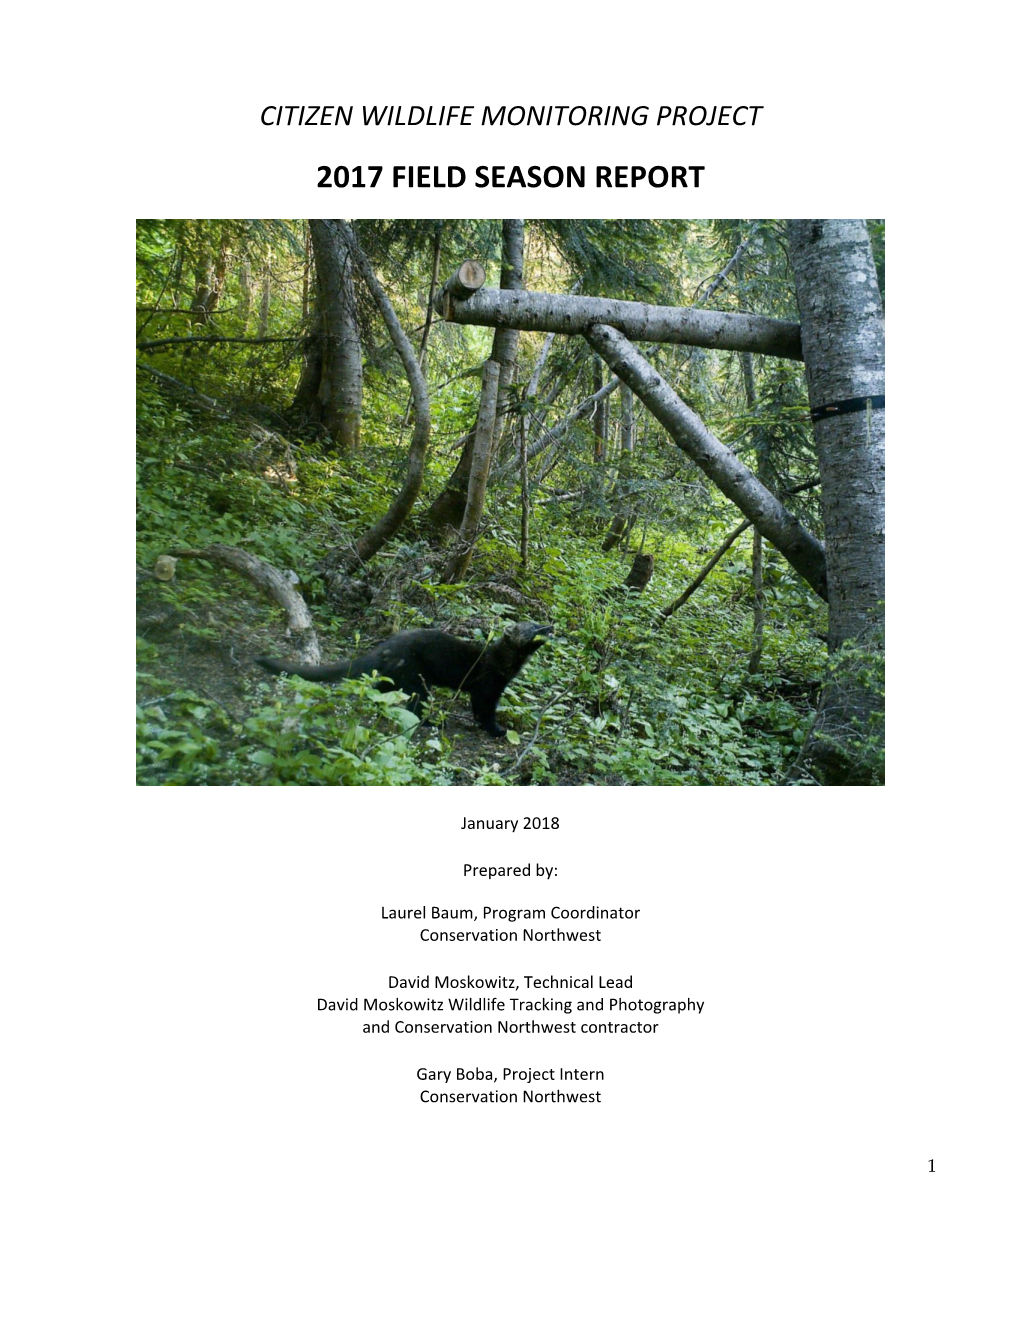 2017 Field Season Report